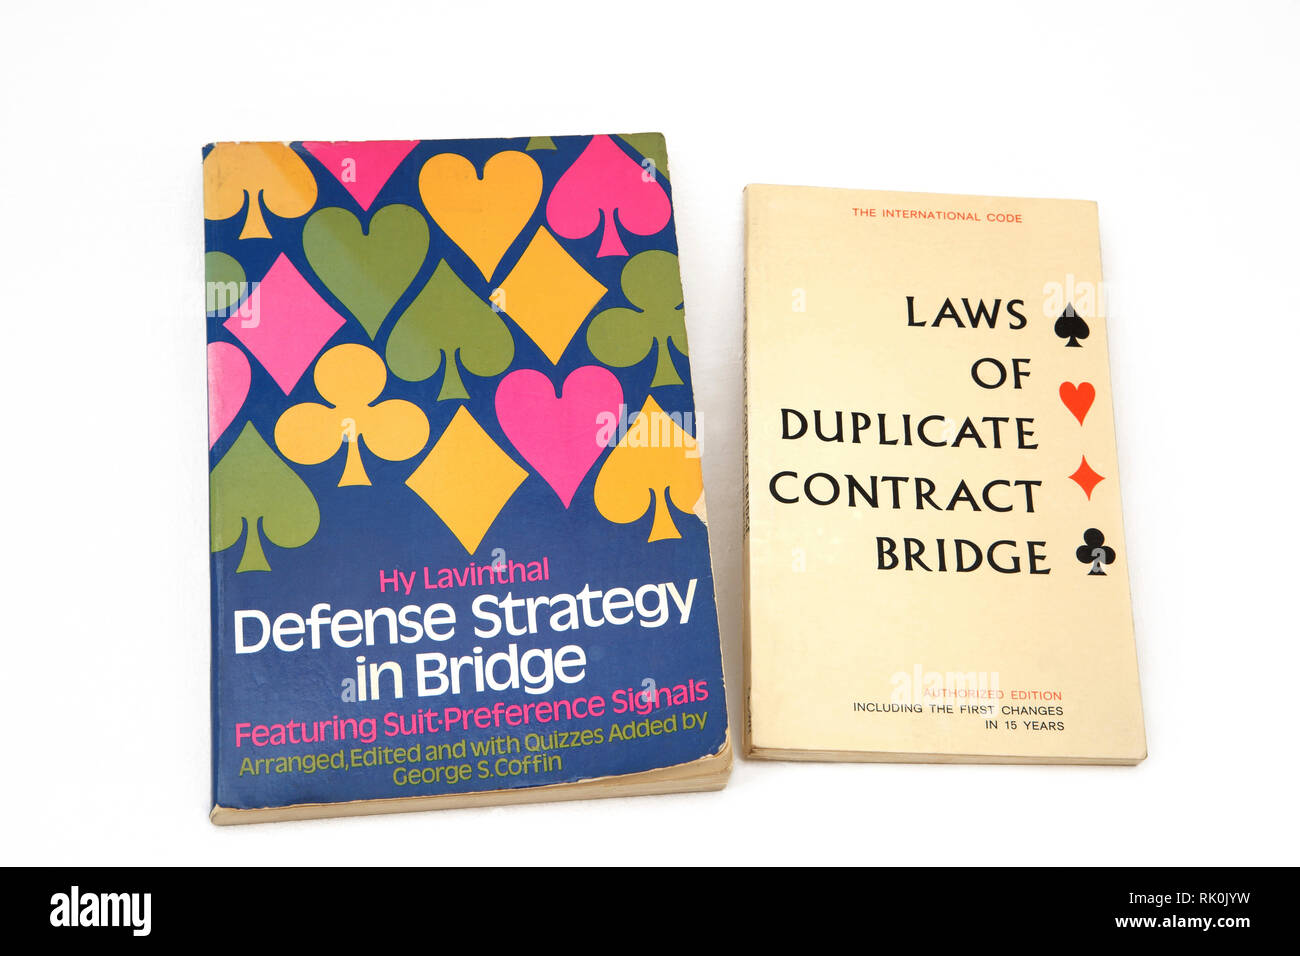 Bücher über Brücke - Verteidigung Strategie in der Brücke und die Gesetze der doppelten Vertrag Brücke Stockfoto